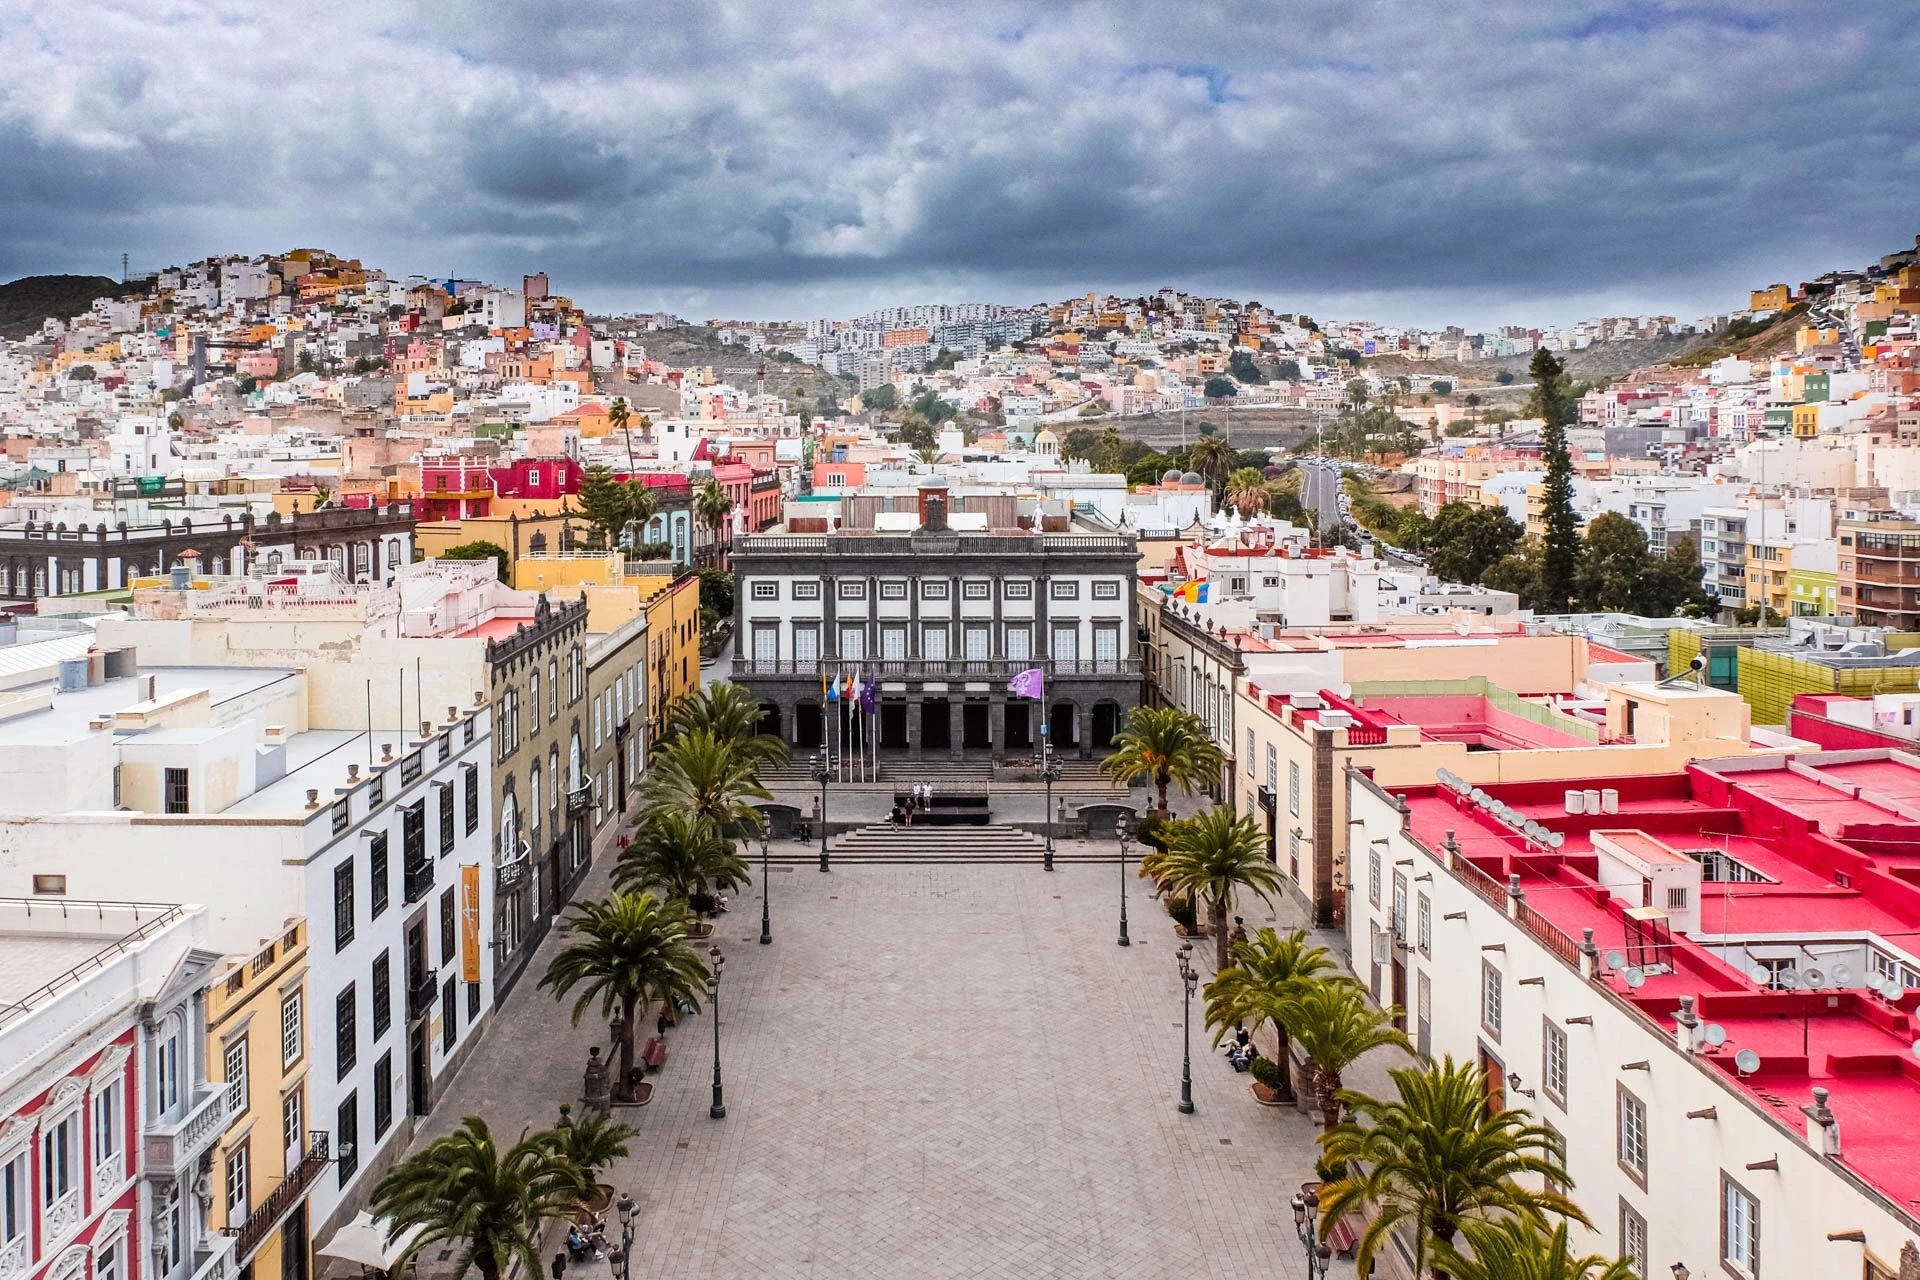 Mudanzas a Canarias: Precios e información para mudanzas a las Islas Canarias